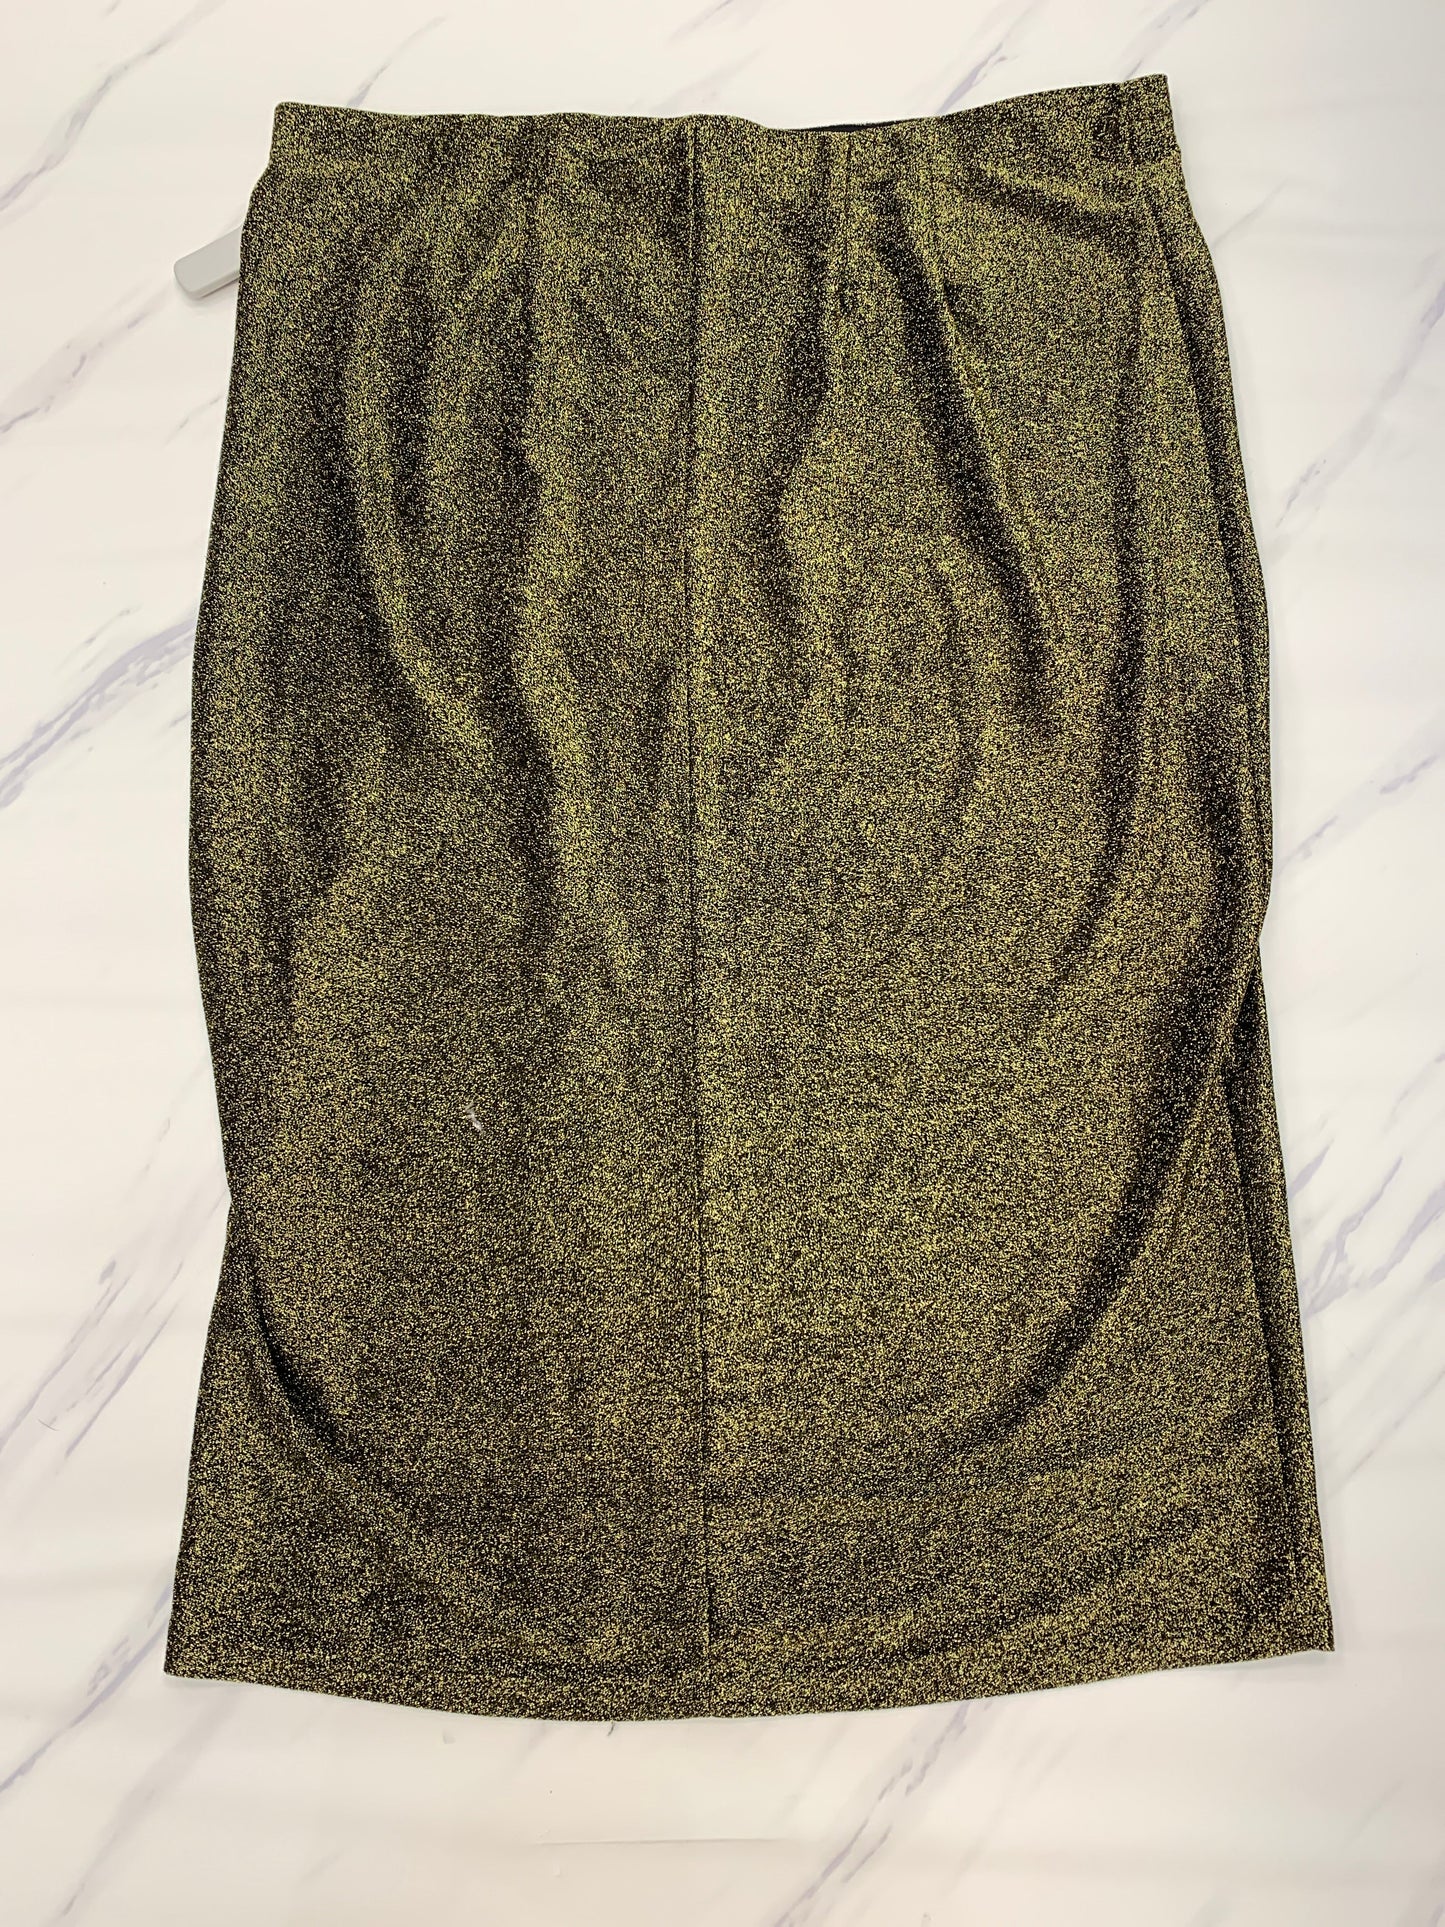 Gold Skirt Maxi Eloquii, Size 22